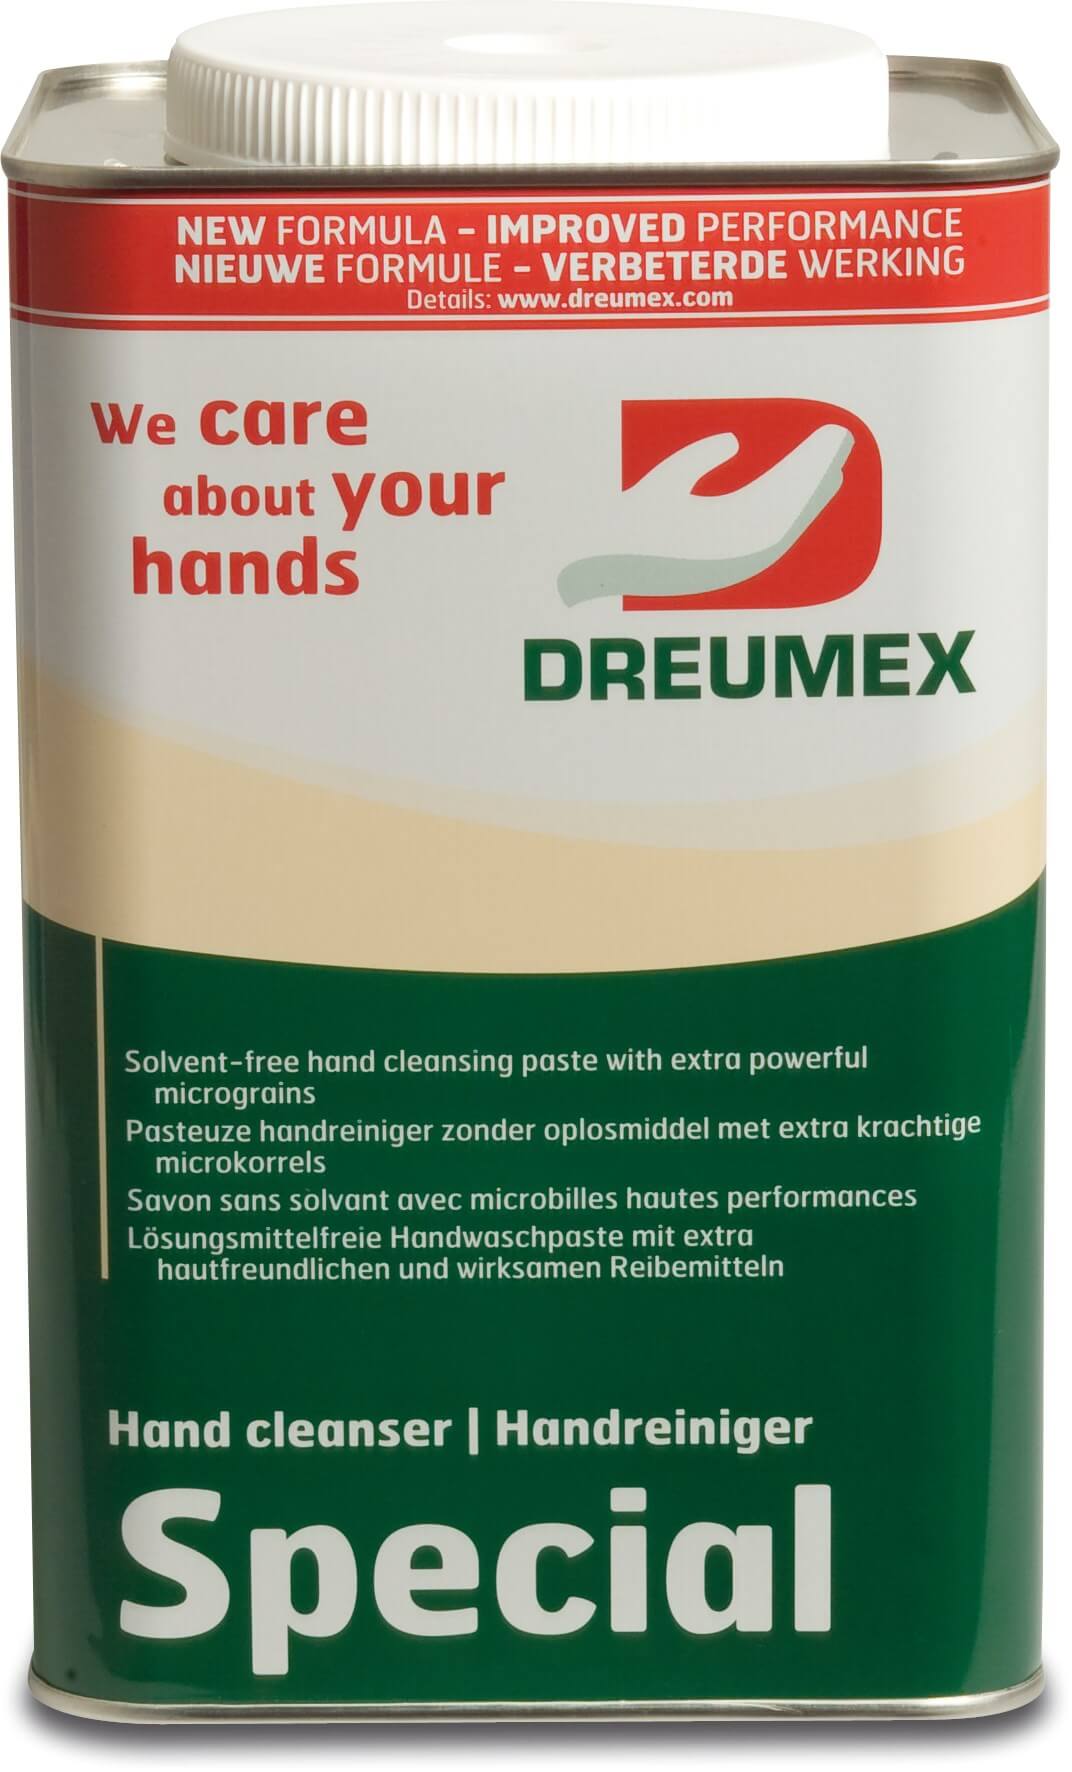 Dreumex Handreiniger Creme type Special